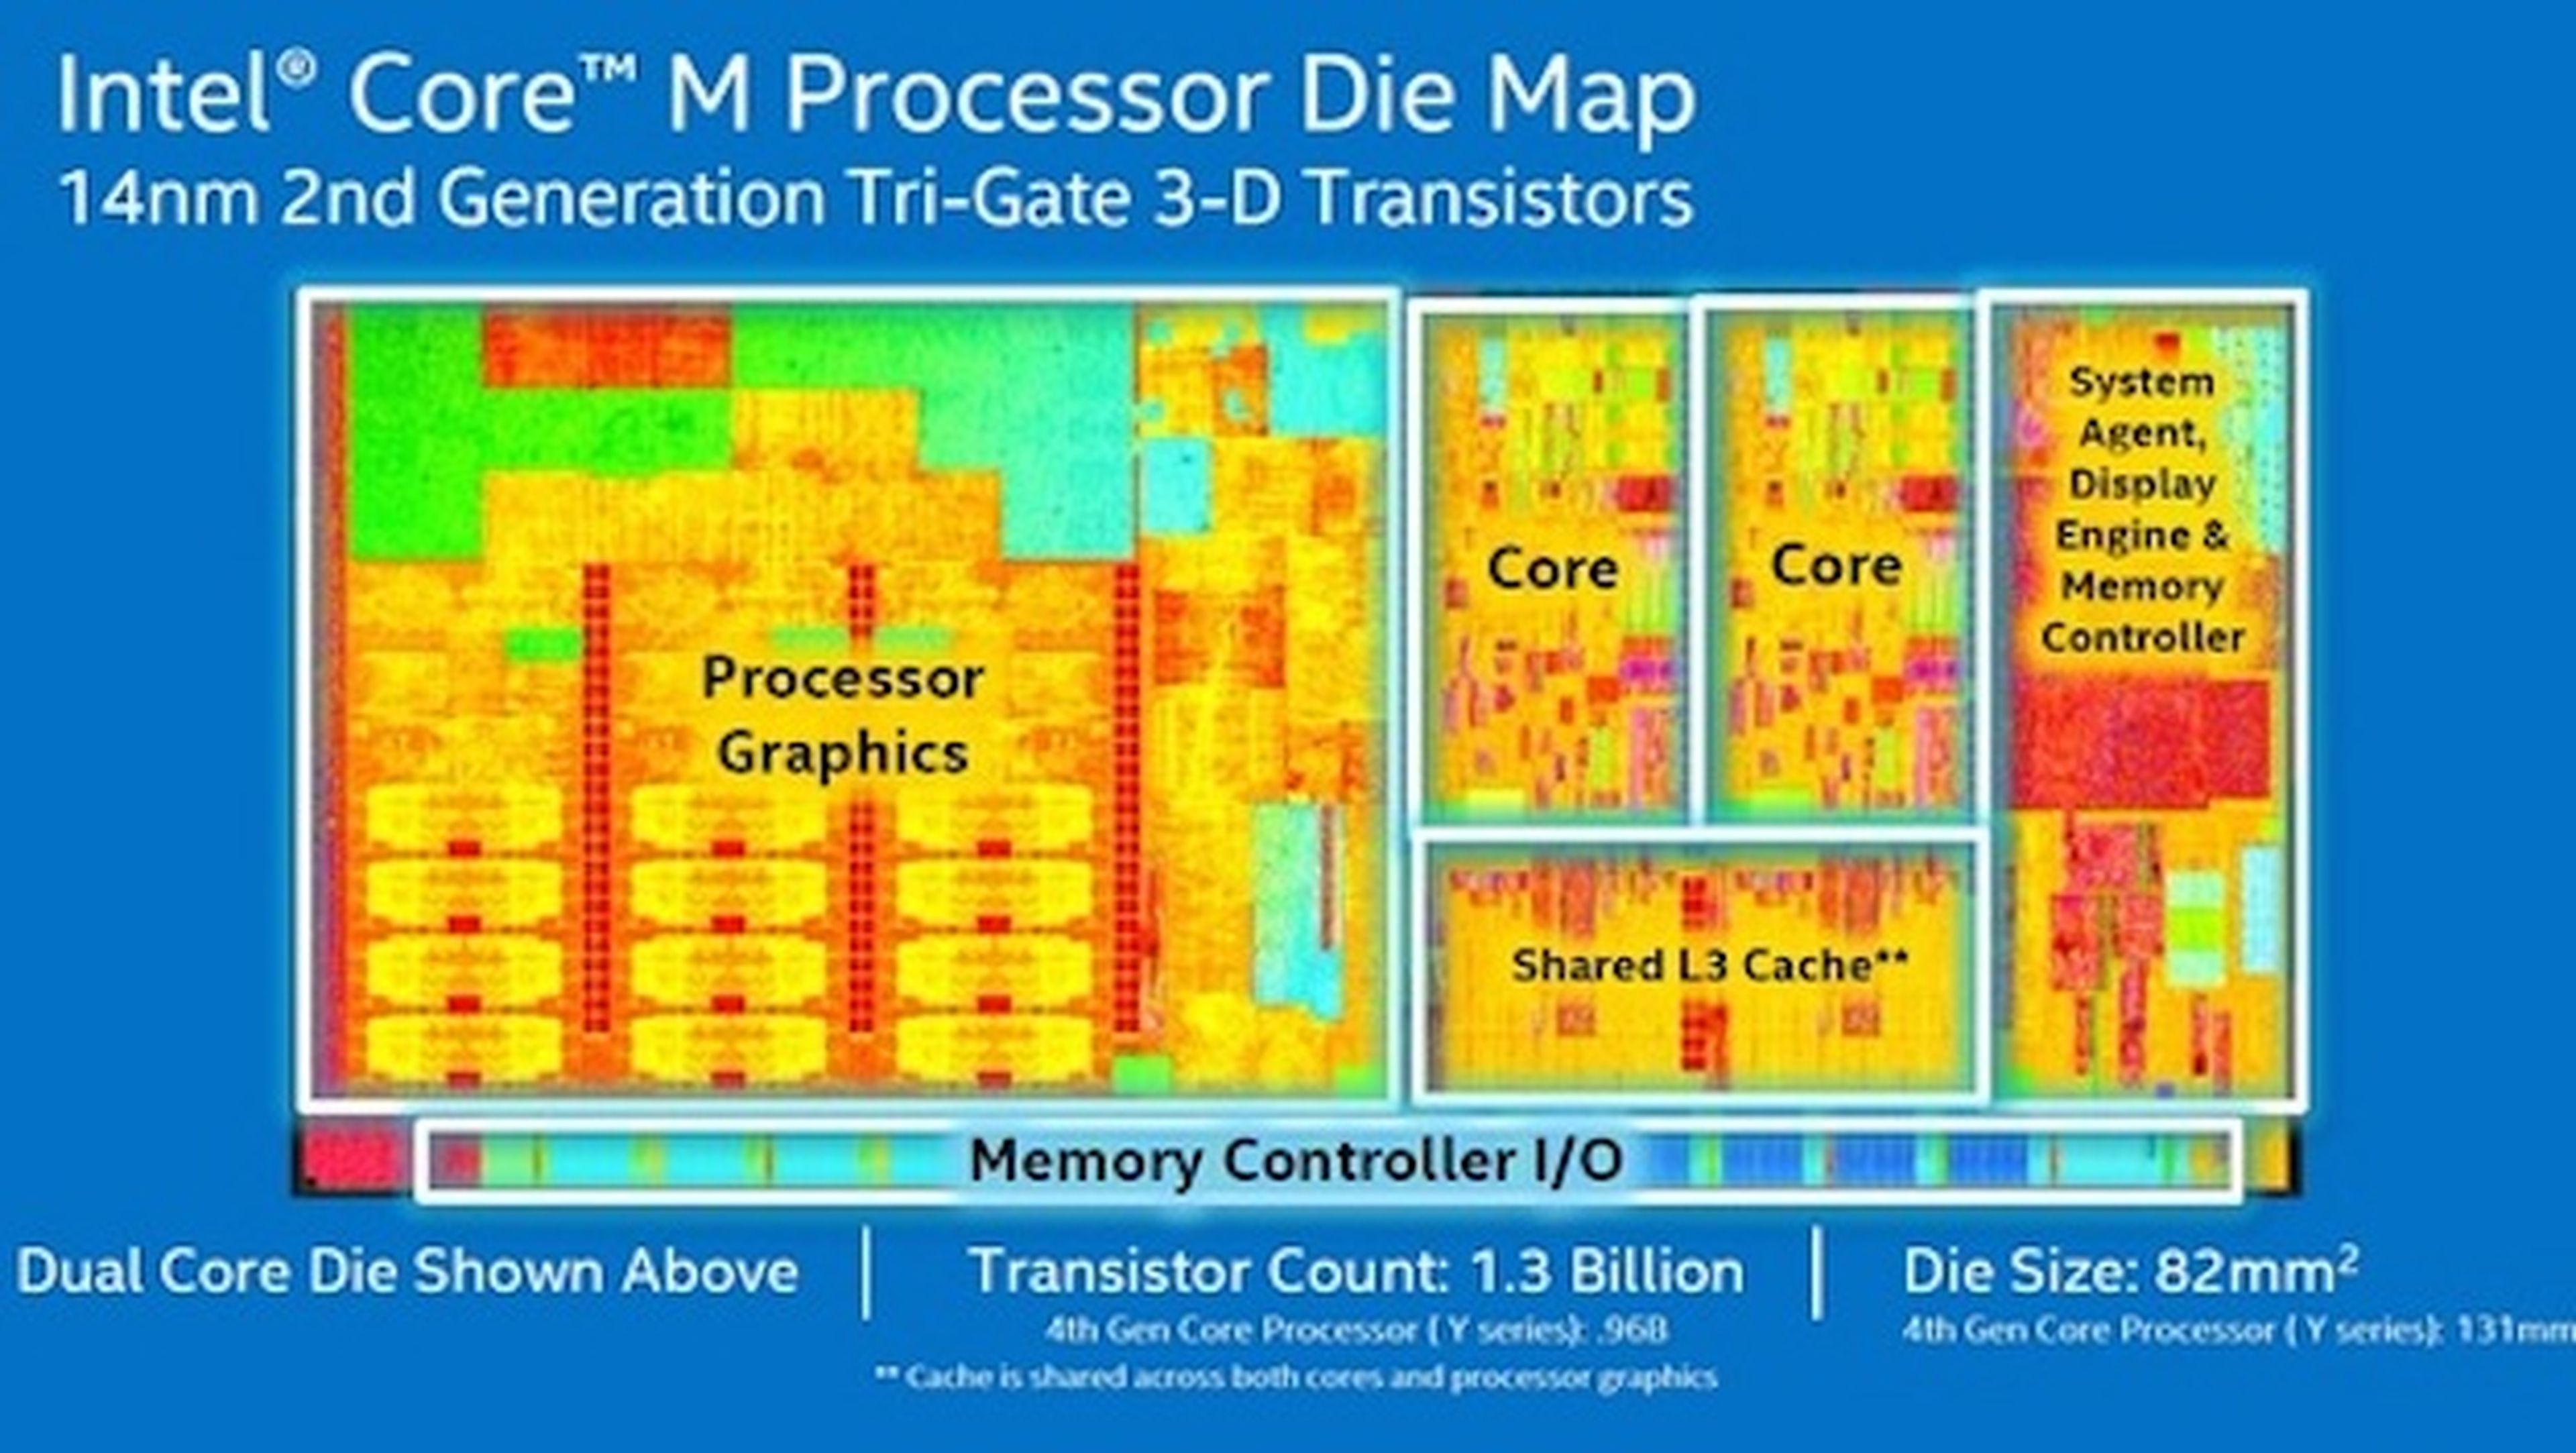 Intel Core M superchips